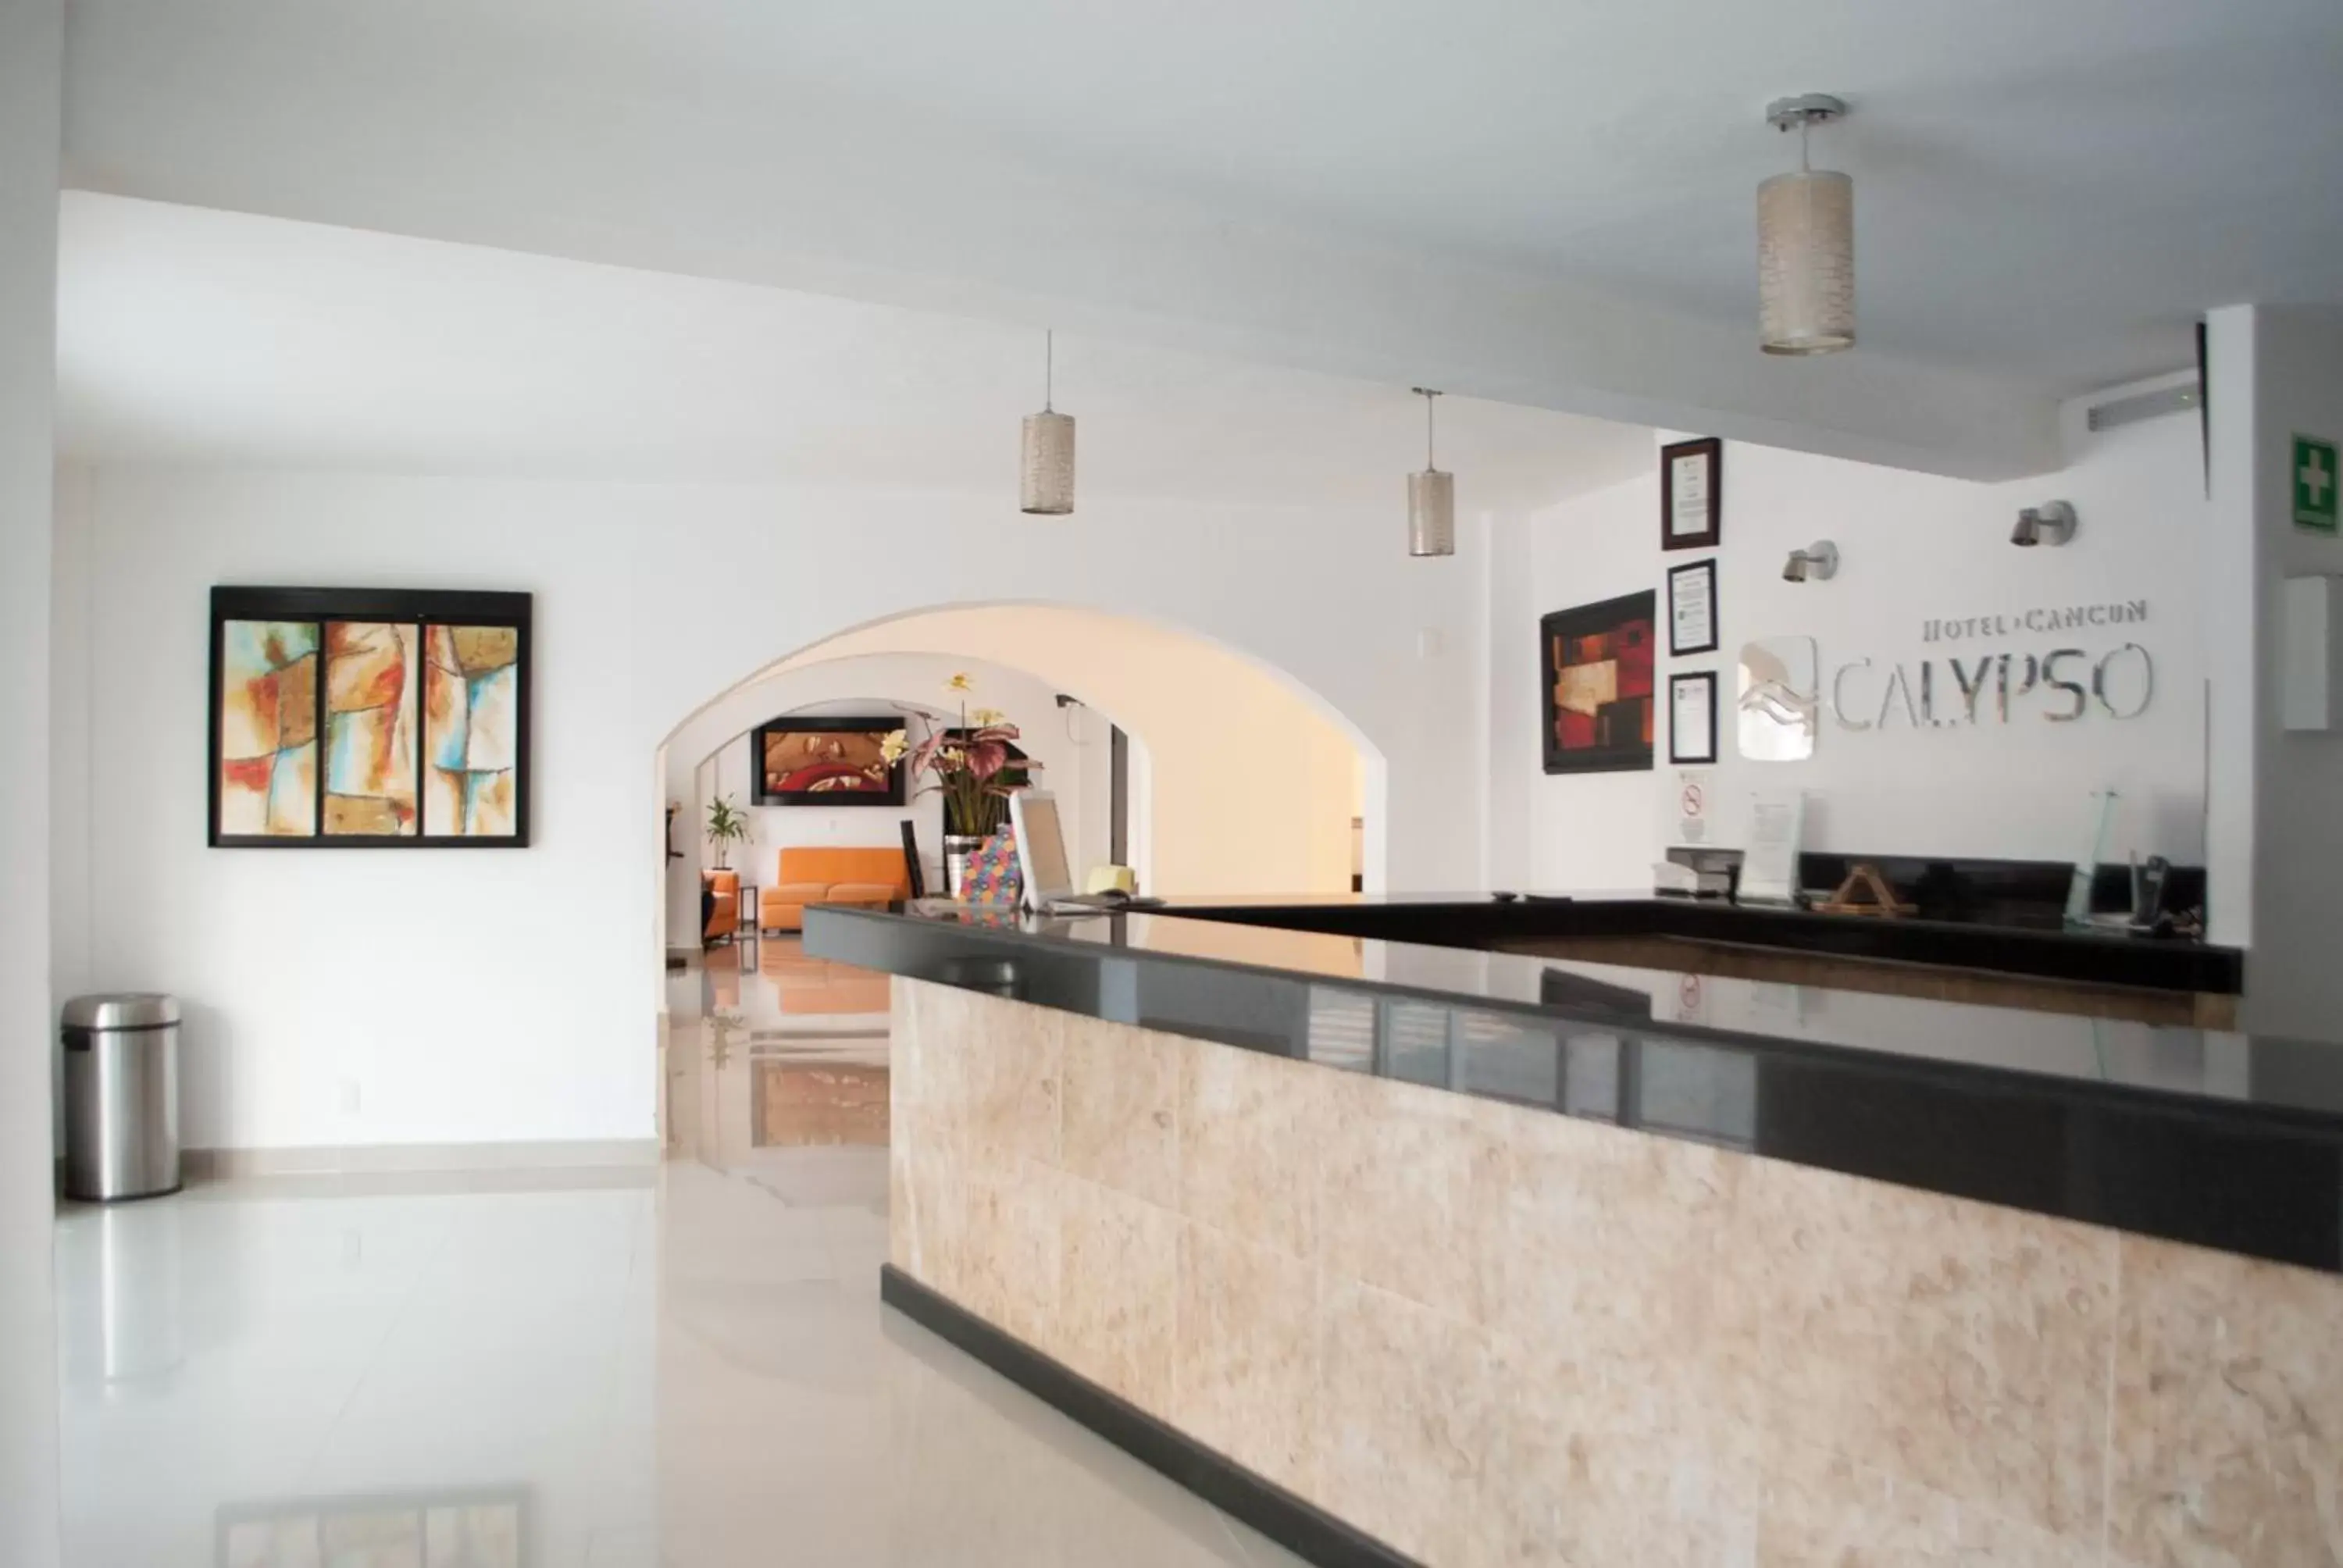 Lobby or reception, Lobby/Reception in Hotel Calypso Cancun